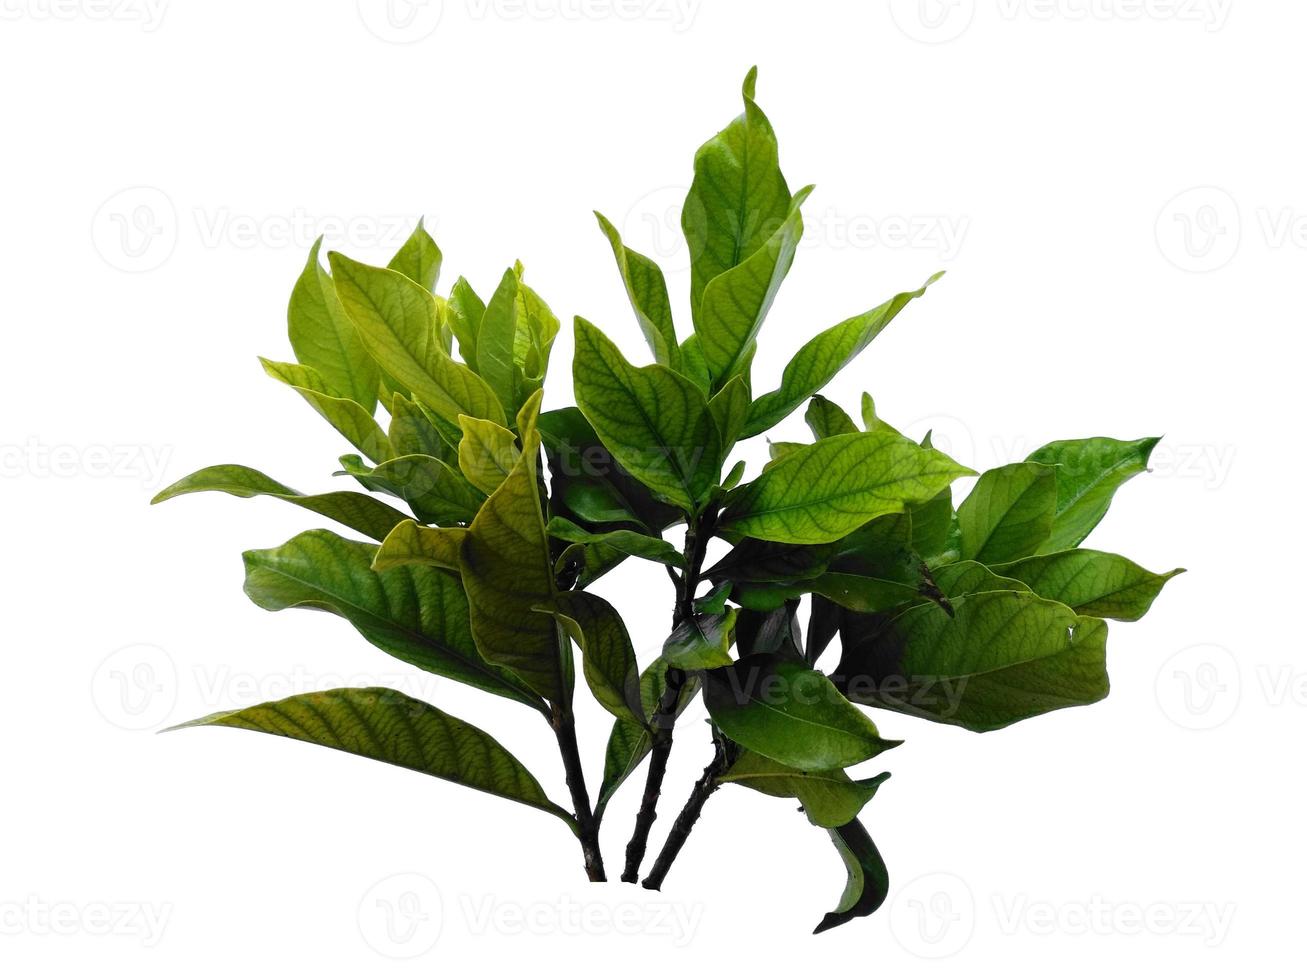 kacapiring ou gardênia augusta ou folhas de jasmim do cabo isoladas no fundo branco foto